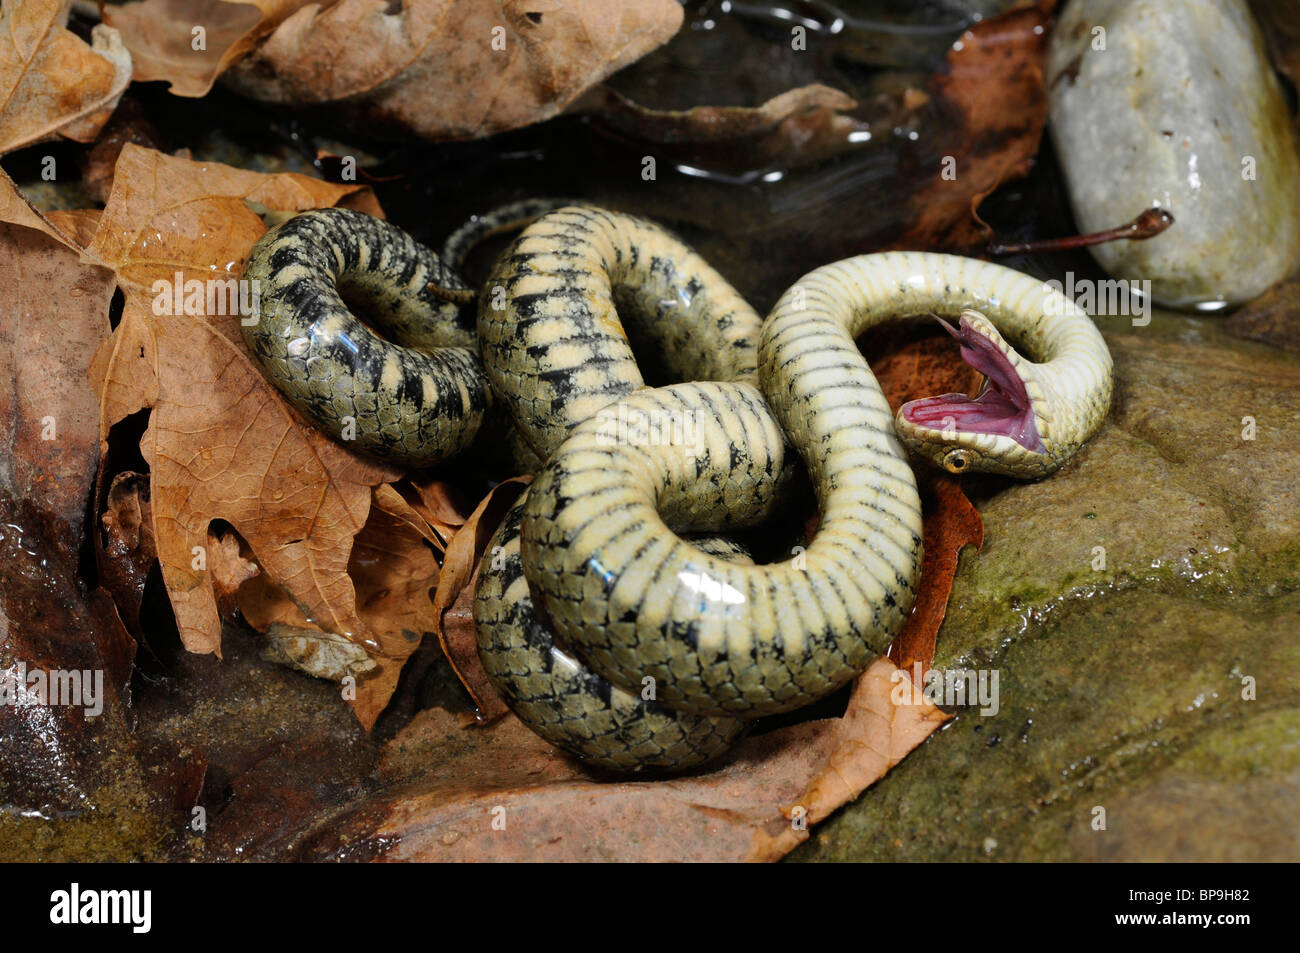 dice snake (Natrix tessellata), feigning death, Greece, Creta, Kournas See Stock Photo